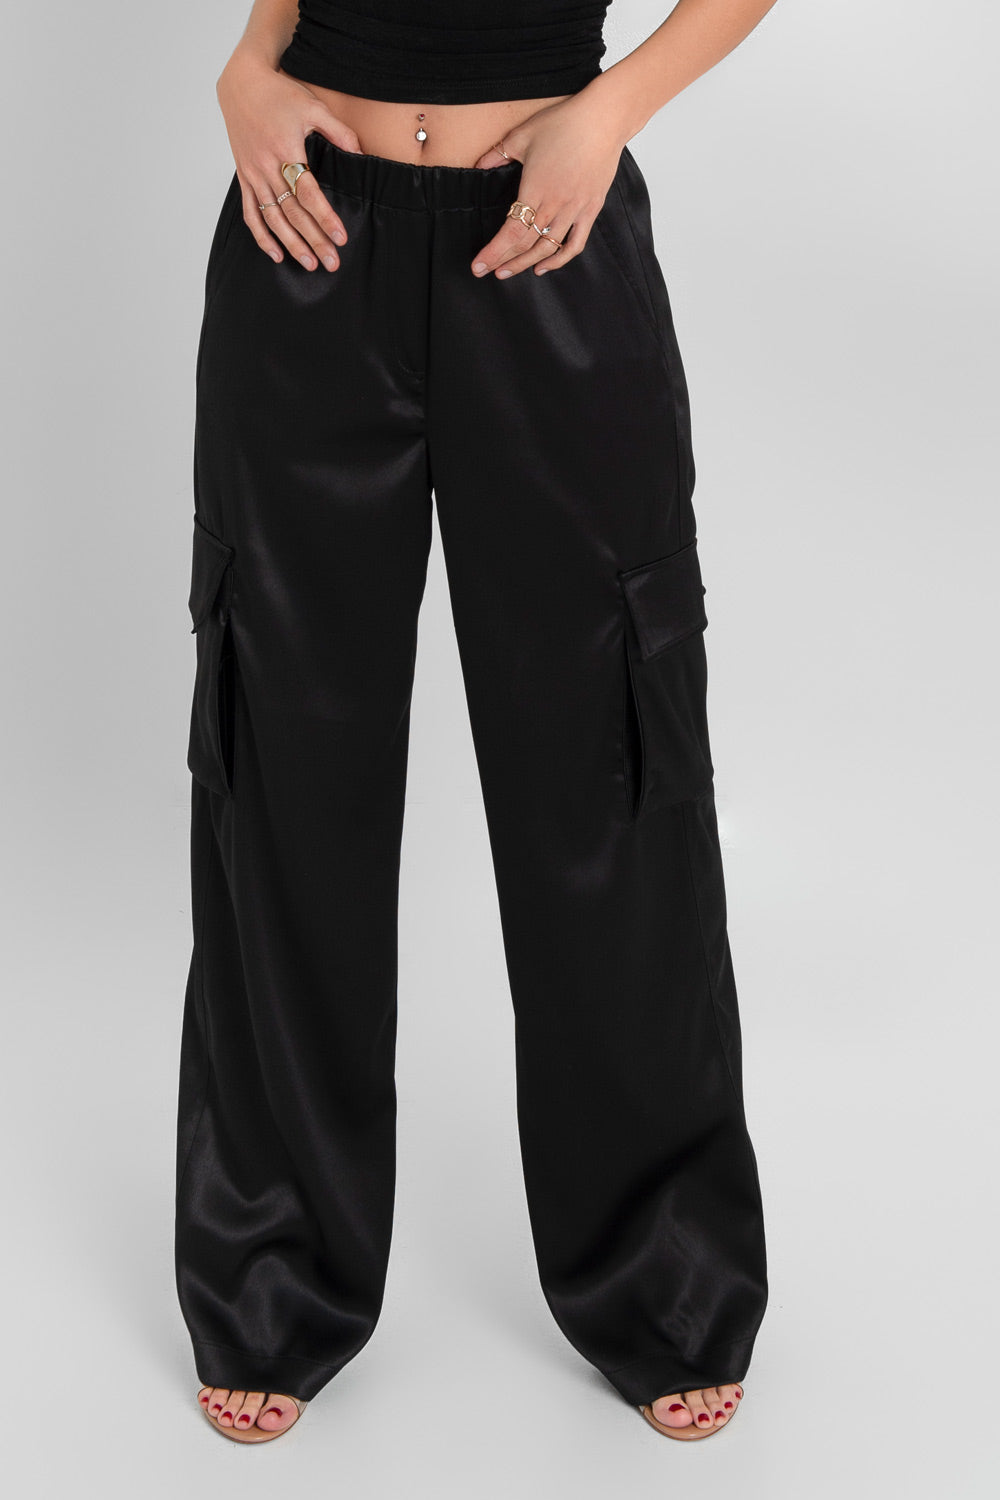 Pantalón satinado de cintura alta, pretina elástica con trabillas, fit wide leg, bolsillos delanteros, laterales y traseros cargo con cartera.